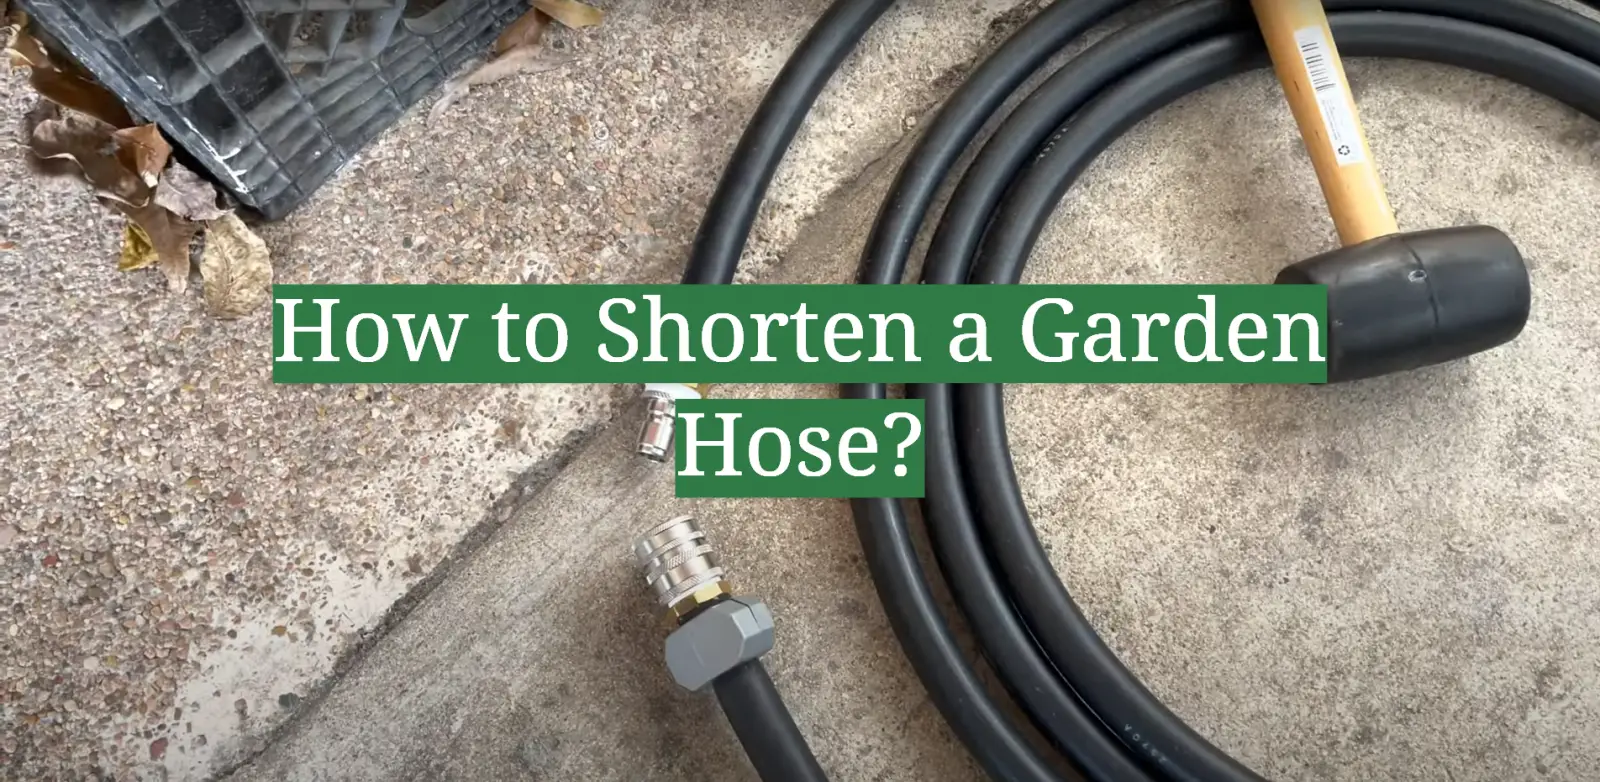 How to Shorten a Garden Hose?